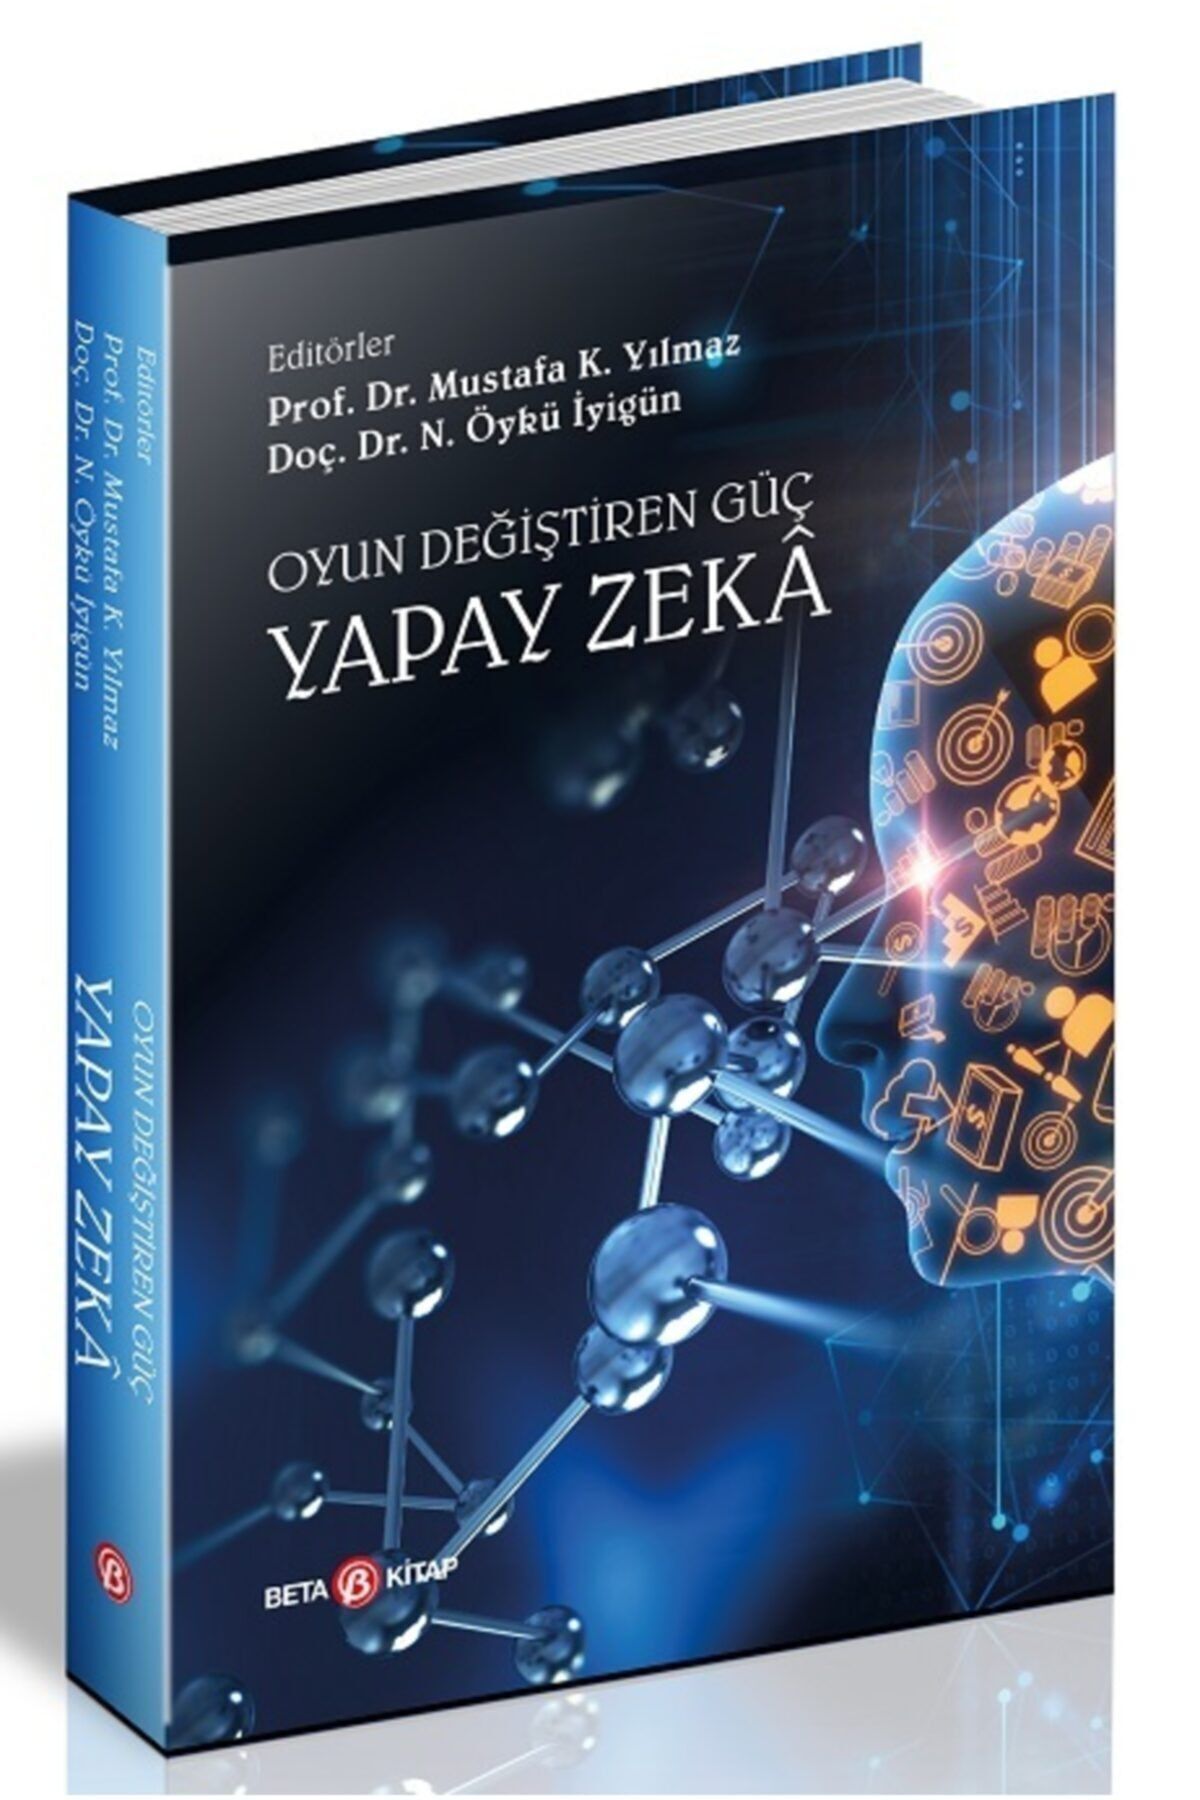 Beta Yayınları Oyun Değiştiren Güç : Yapay Zeka - Beta Yayınevi - Mustafa K.yılmaz & N.öykü Iyigün Kitabı